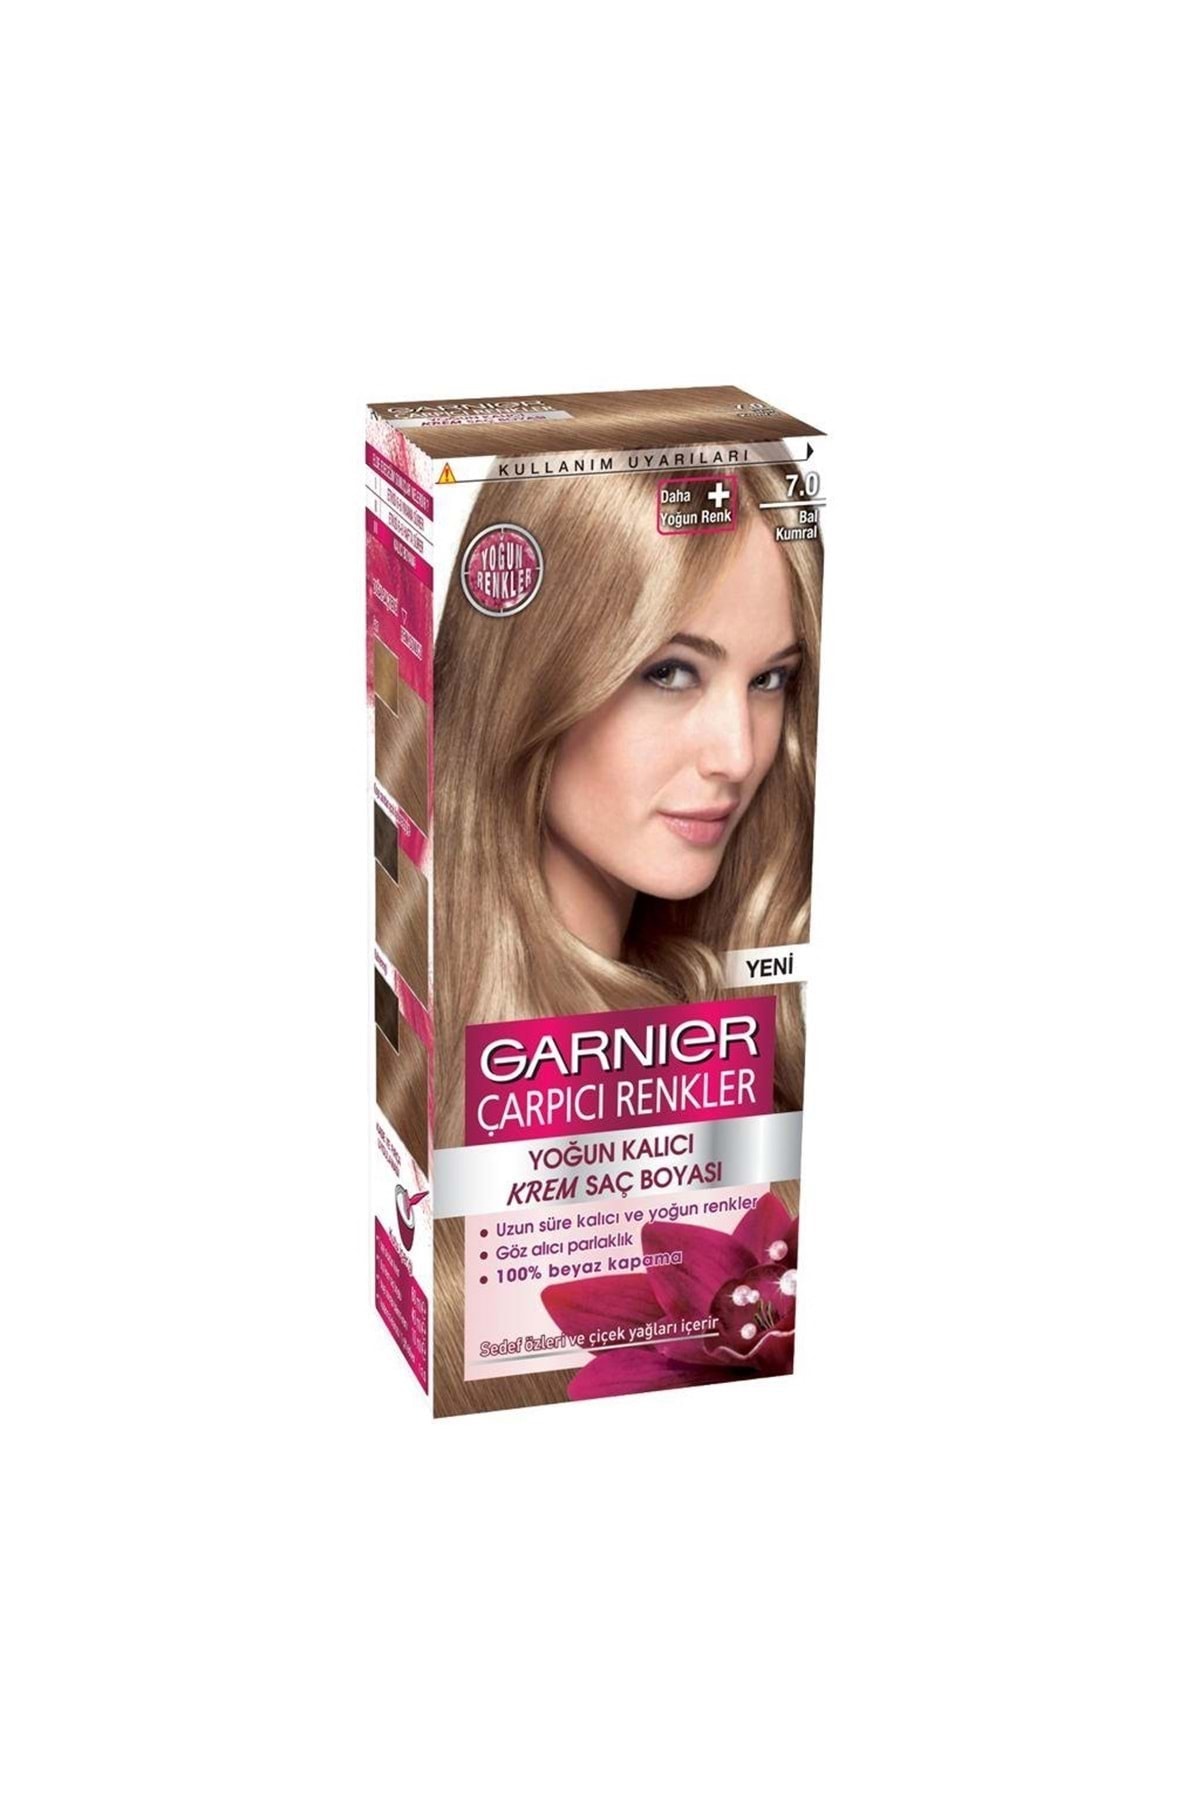 Garnier Çarpıcı Renkler Krem Saç Boyası 7.0 Bal Kumral